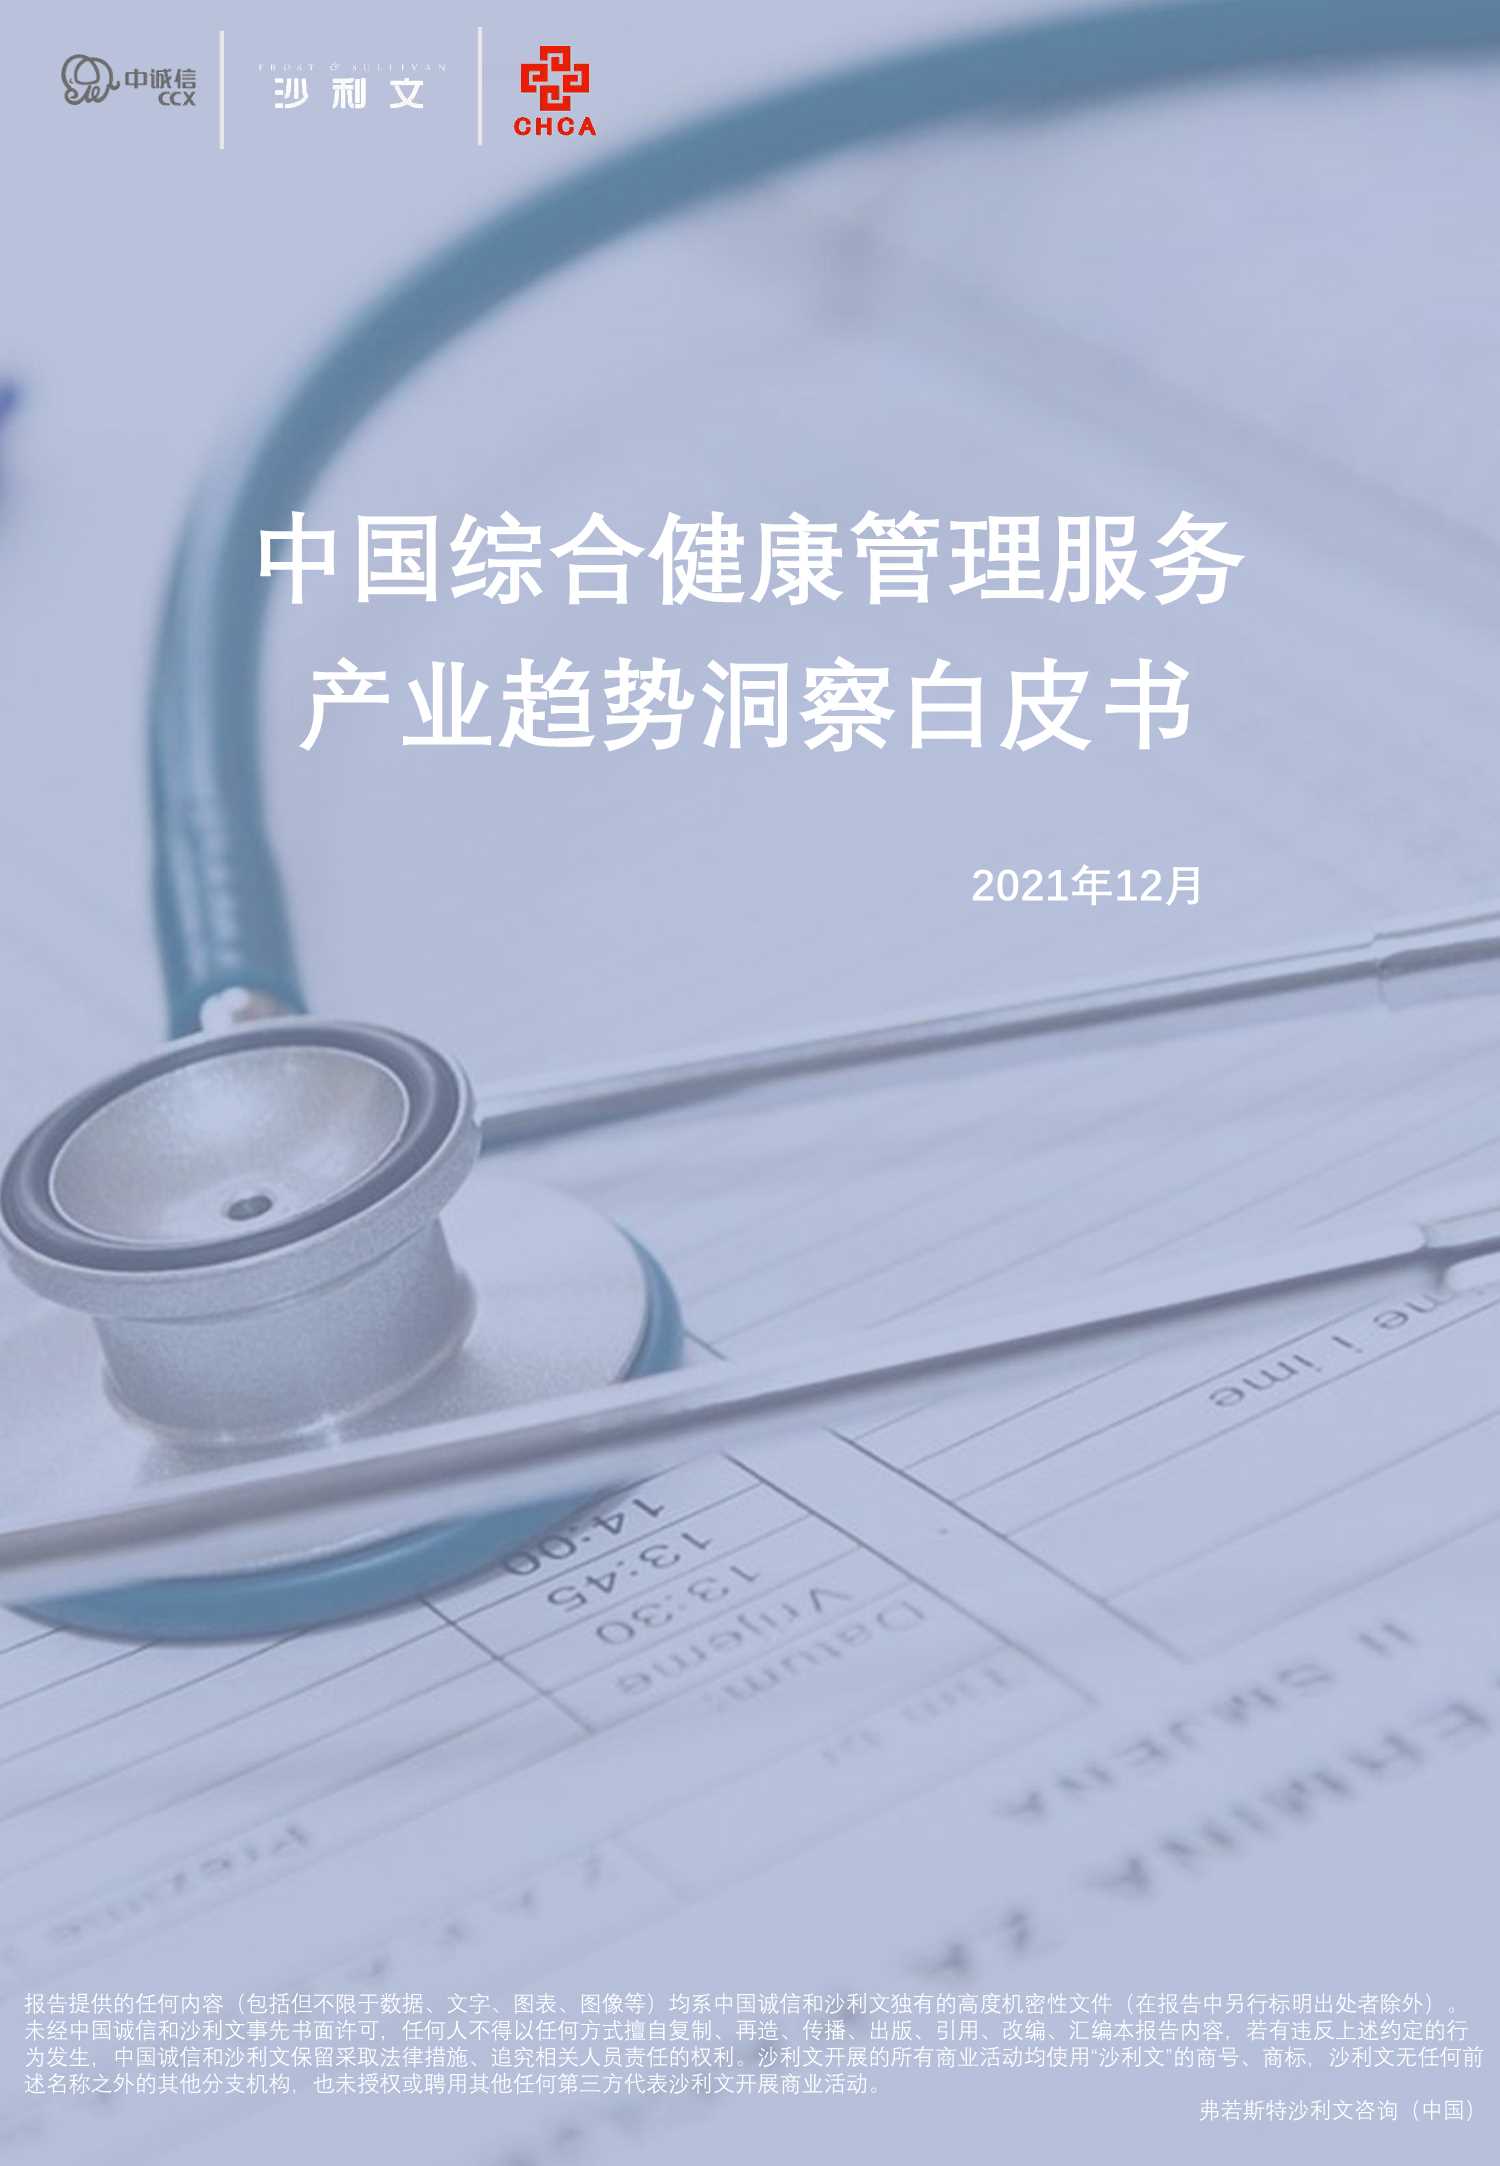 沙利文-2021年中国综合健康管理服务产业趋势洞察白皮书-2022.03-68页